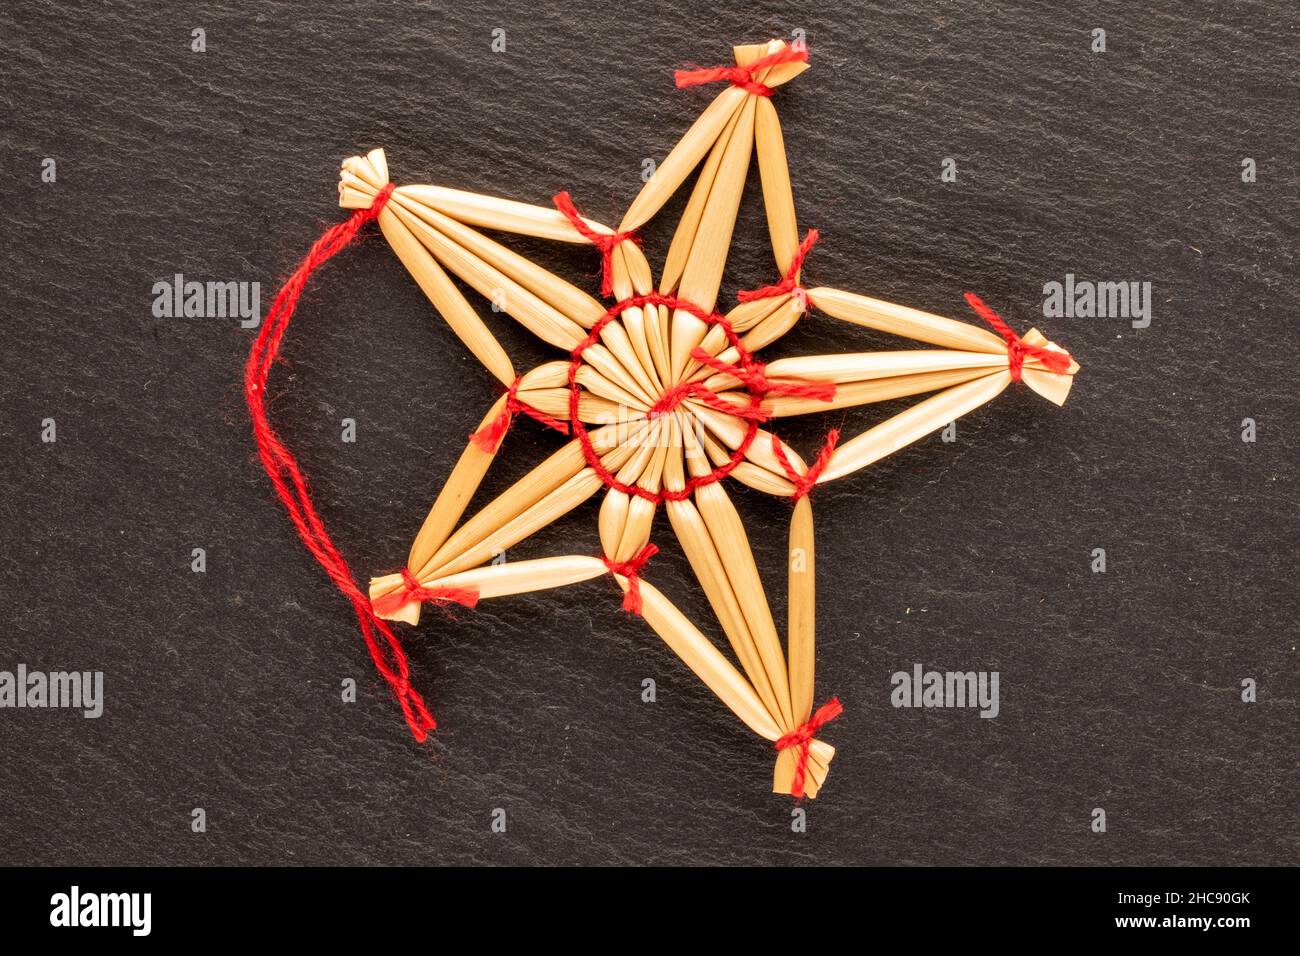 Un jouet de Noël en paille en forme d'étoile sur une pierre d'ardoise, vue rapprochée du dessus. Banque D'Images